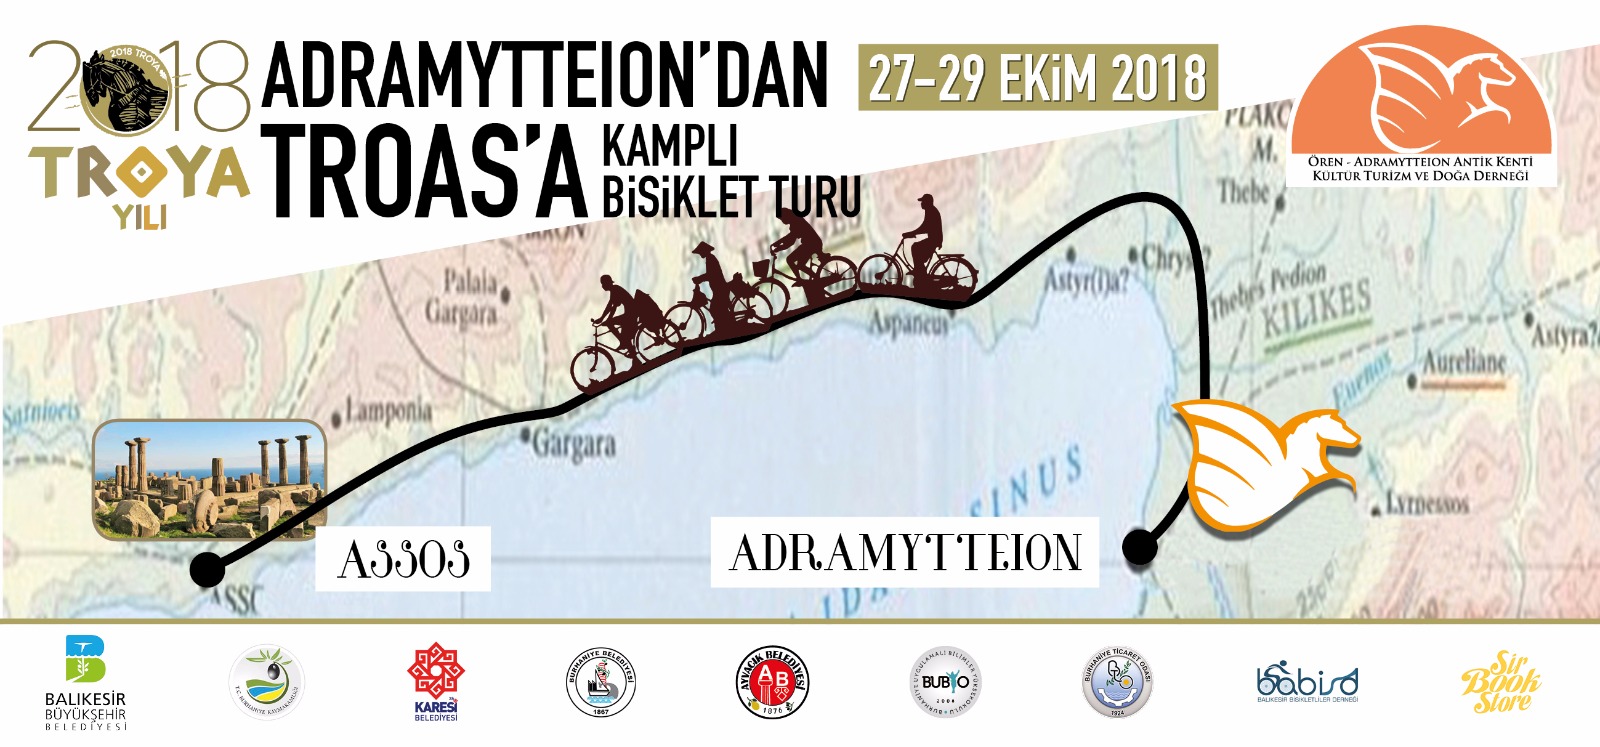 2018 Troya Yılı Adramytteion’dan Troas’a Kamplı Bisiklet Turu